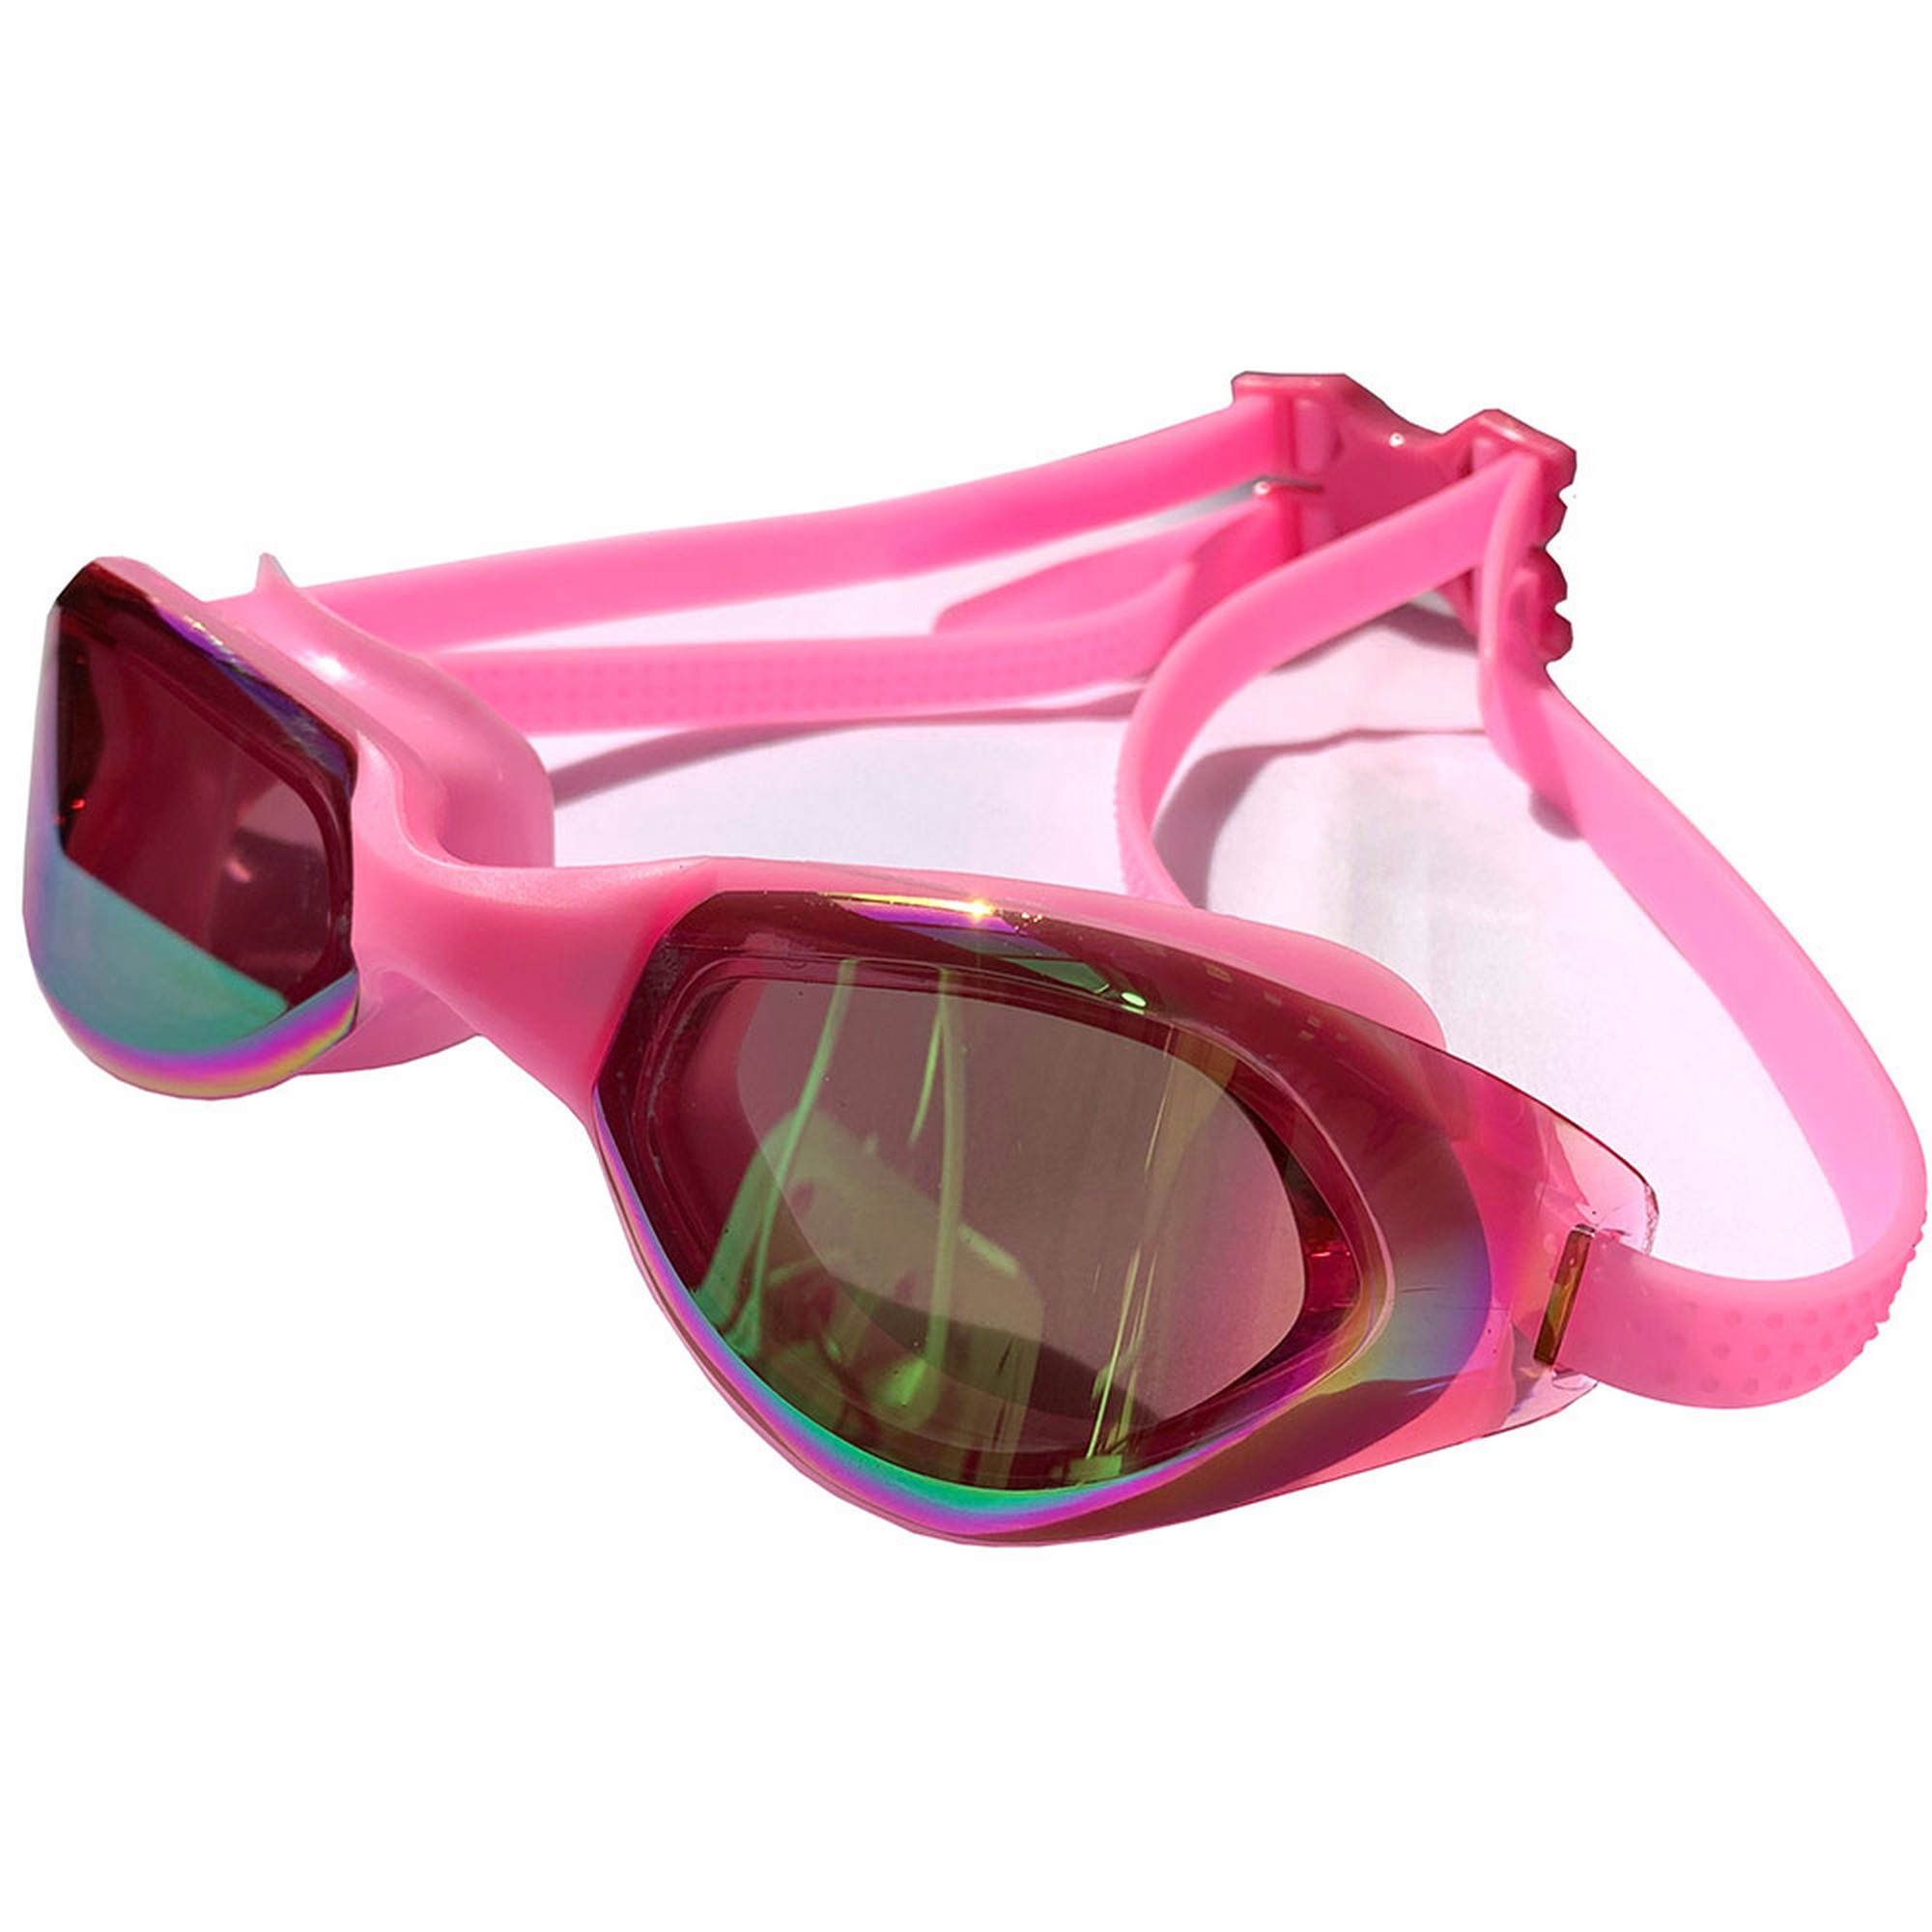 Очки для плавания Sportex взрослые, зеркальные E33119-2 розовый,  - купить со скидкой